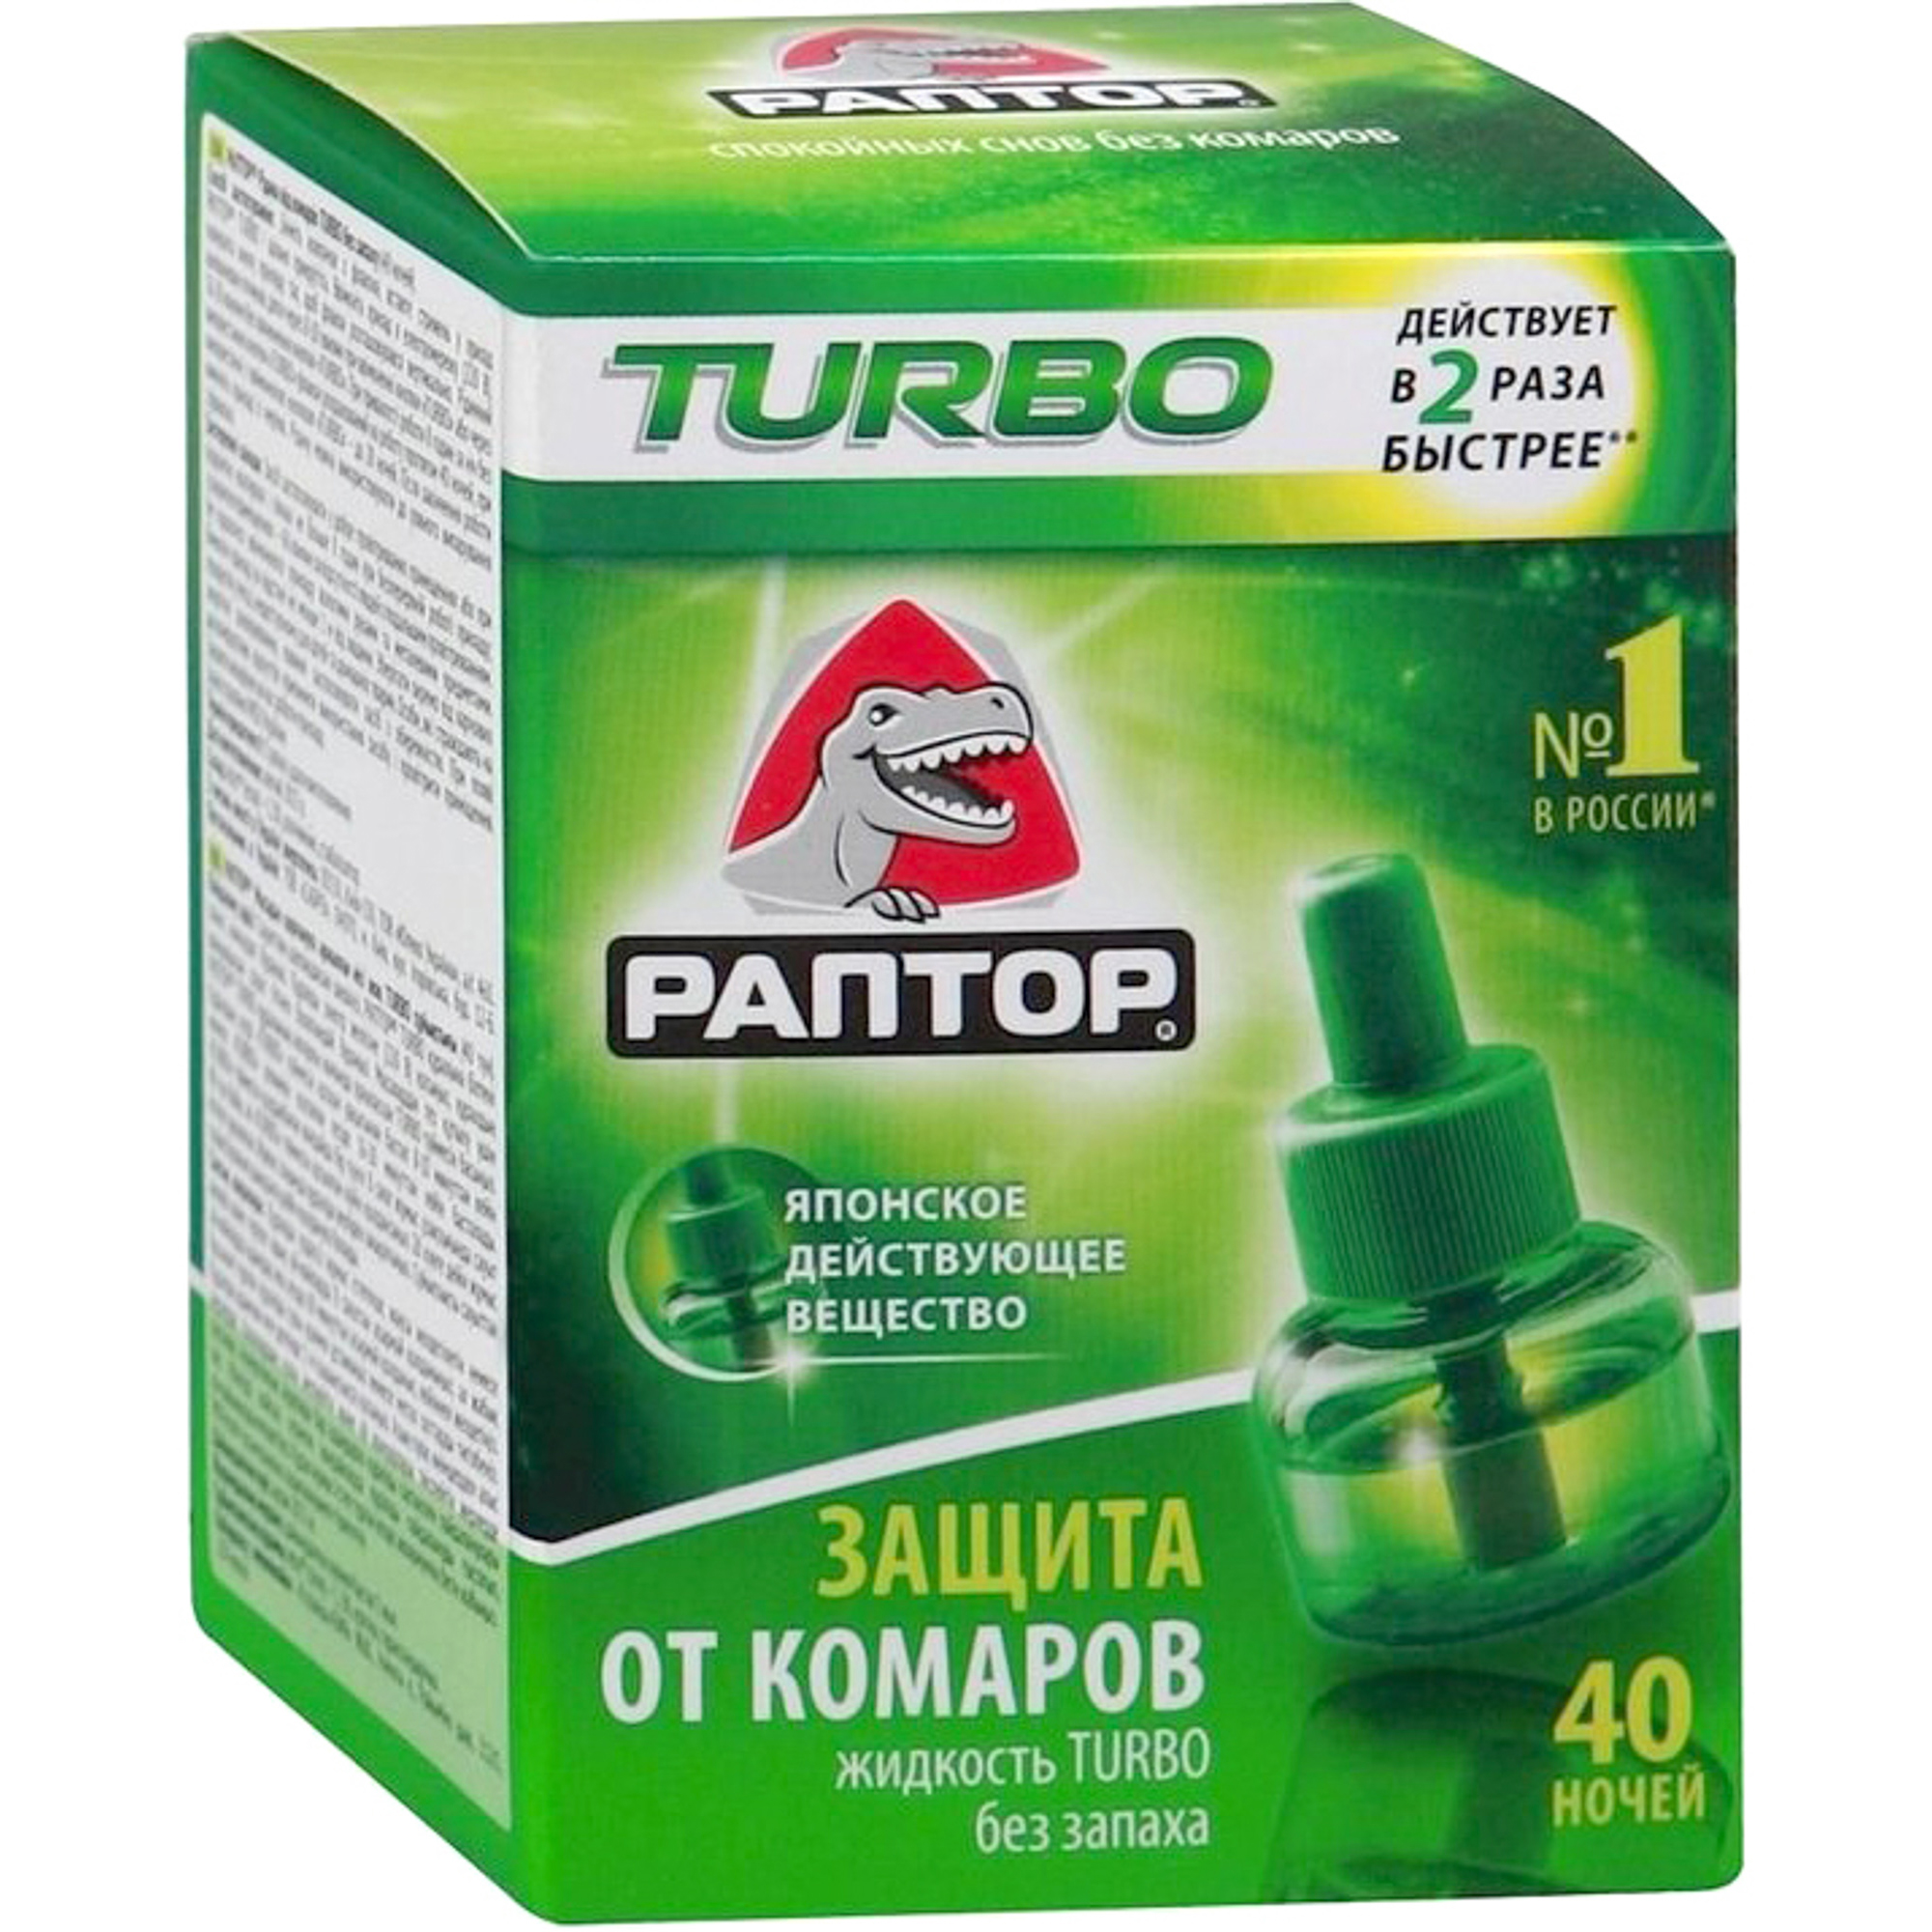 Жидкость от комаров Раптор TURBO, 40 ночей раптор turbo комплект прибор фумигатор жидкость от комаров без запаха 40 ночей